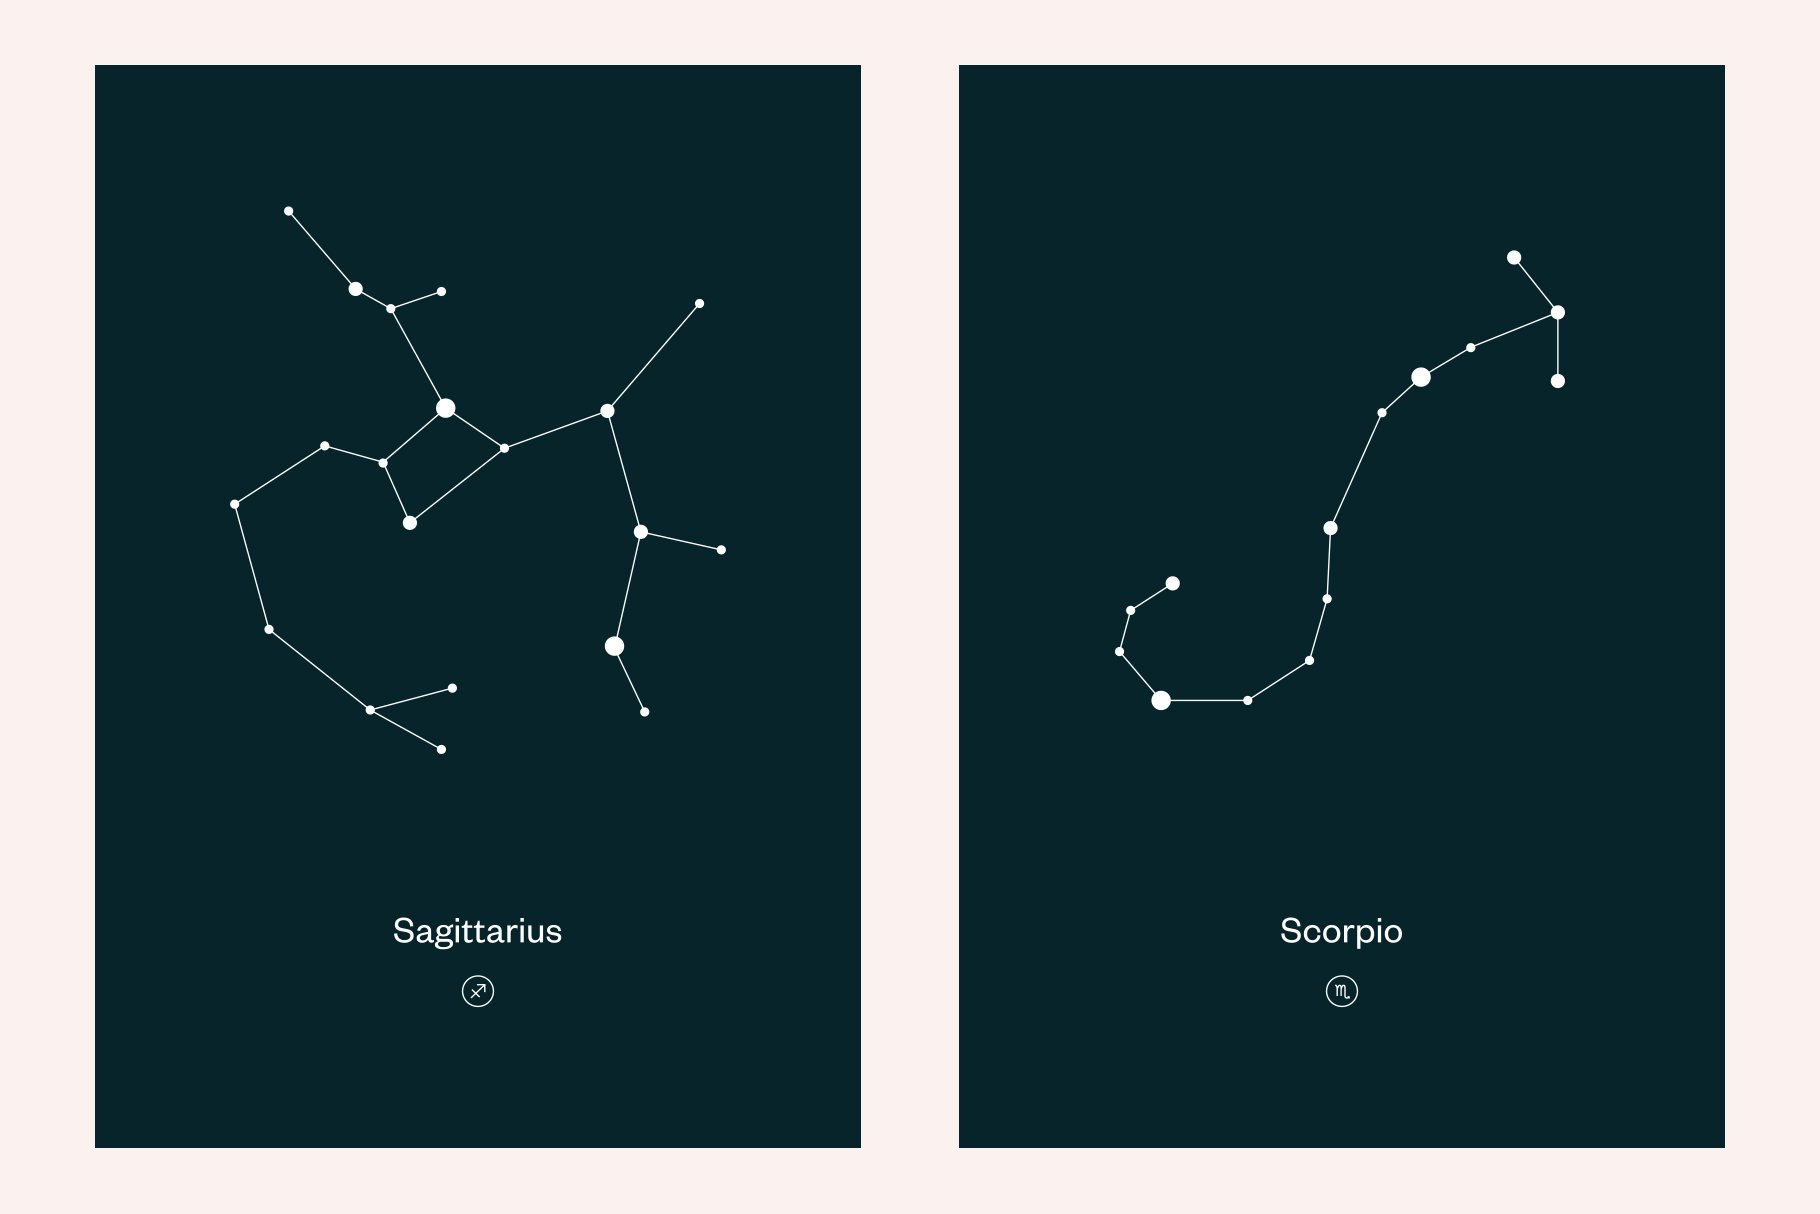 Minimalistic Sagittarius and scorpio compositions.